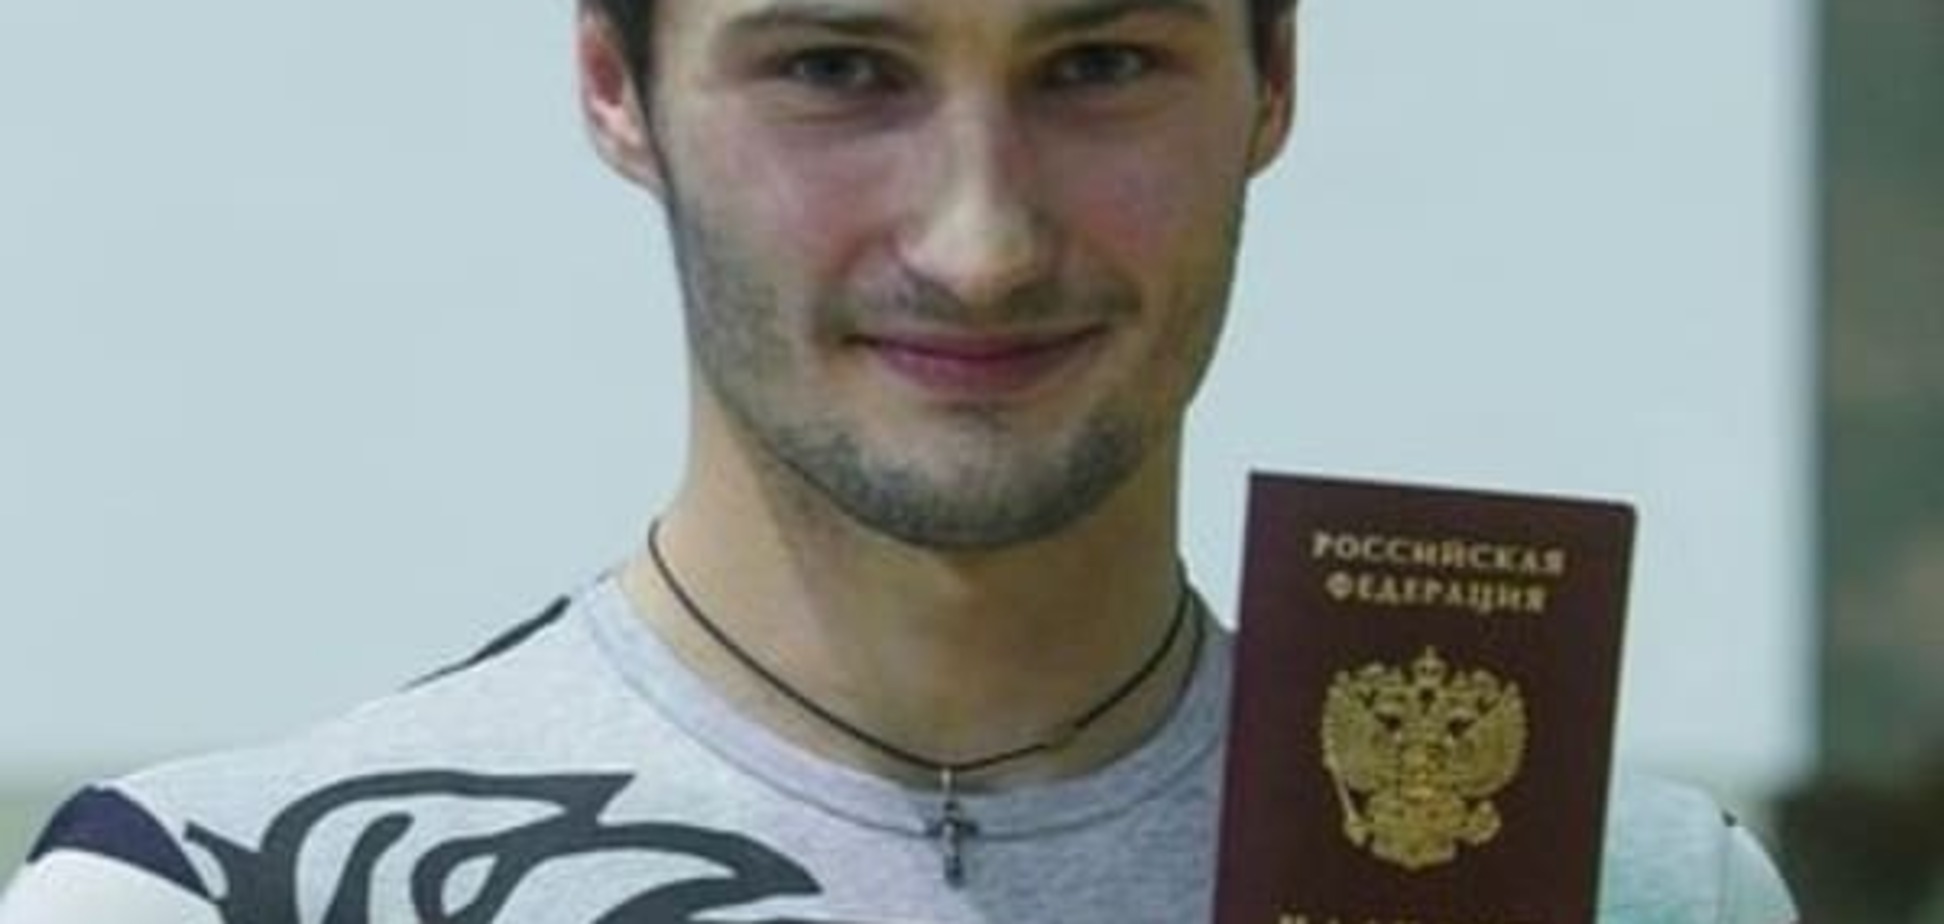 'Це зрада!': український чемпіон шокував тренера російським громадянством